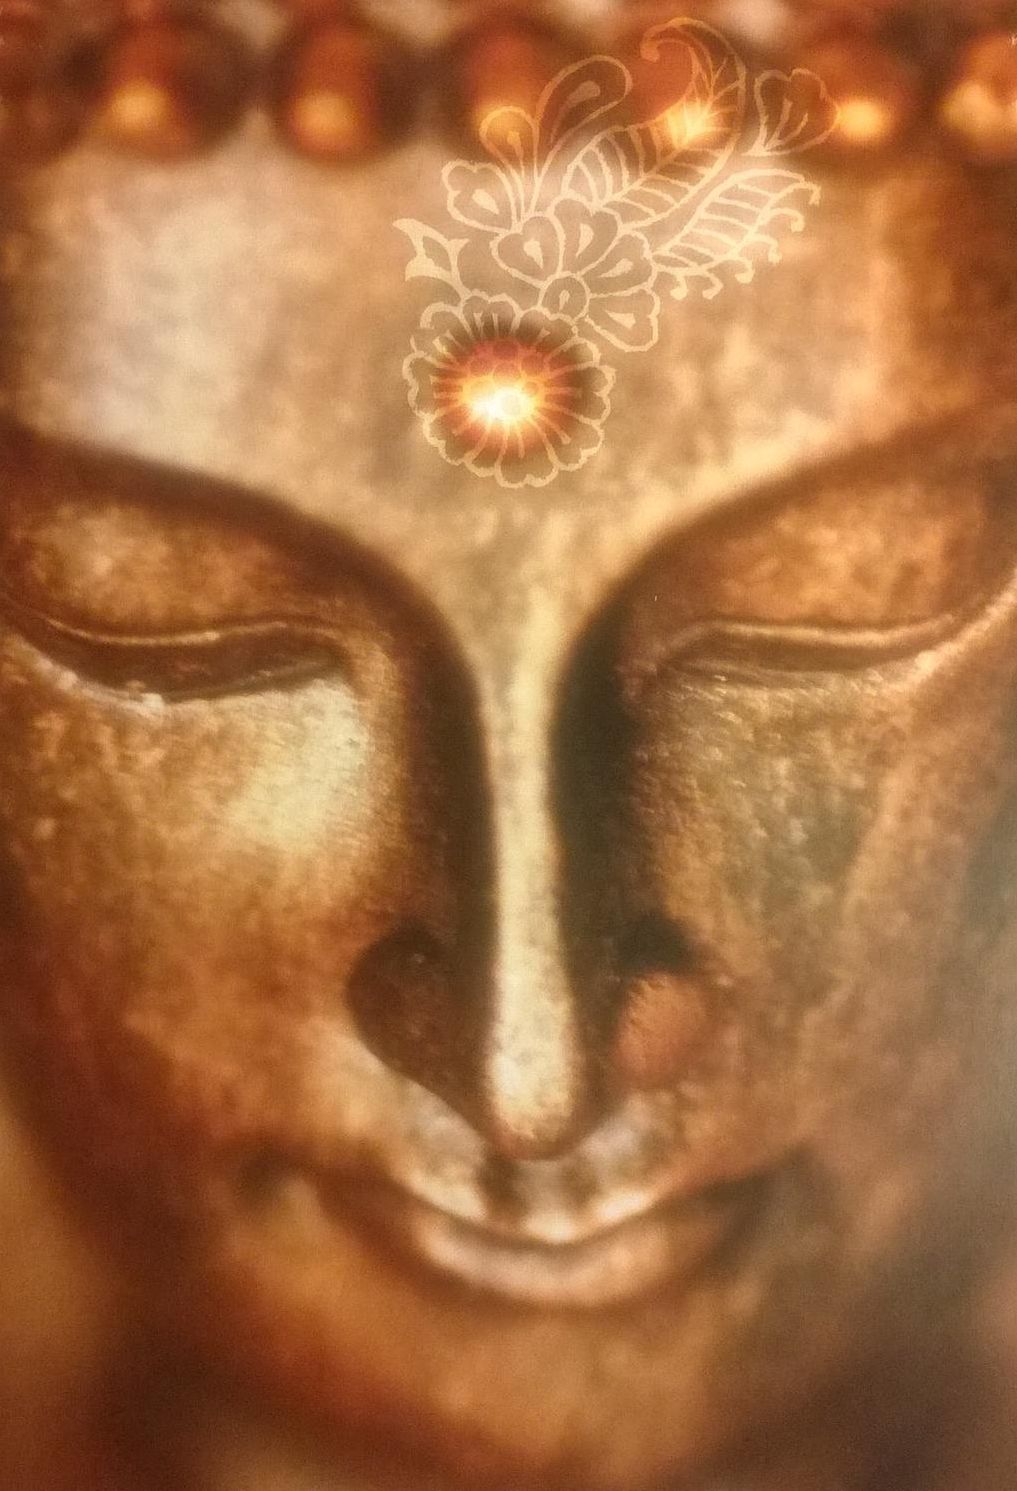 Gesicht eines goldenen Buddhas